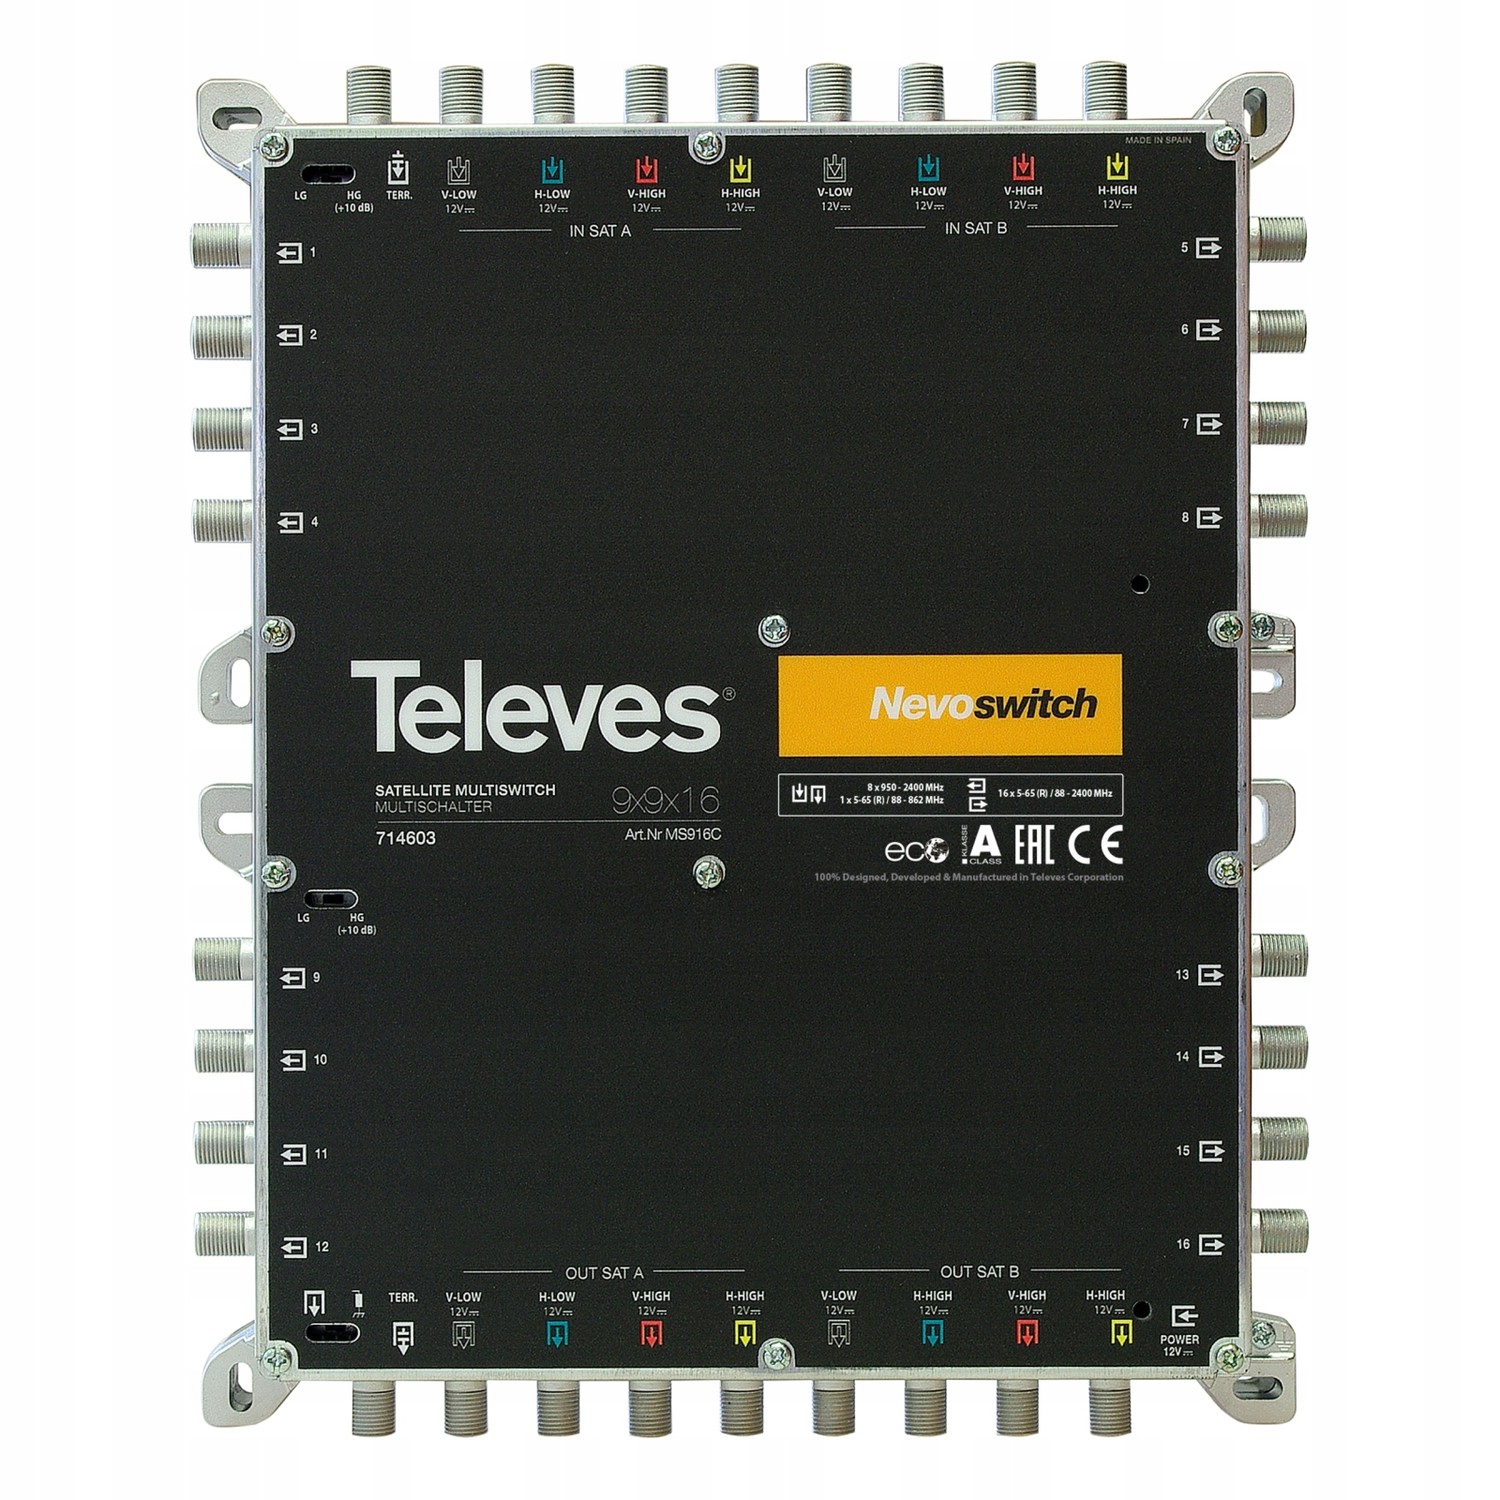 Multipřepínač MS9X9X16C Televes Nevoswitch 714603